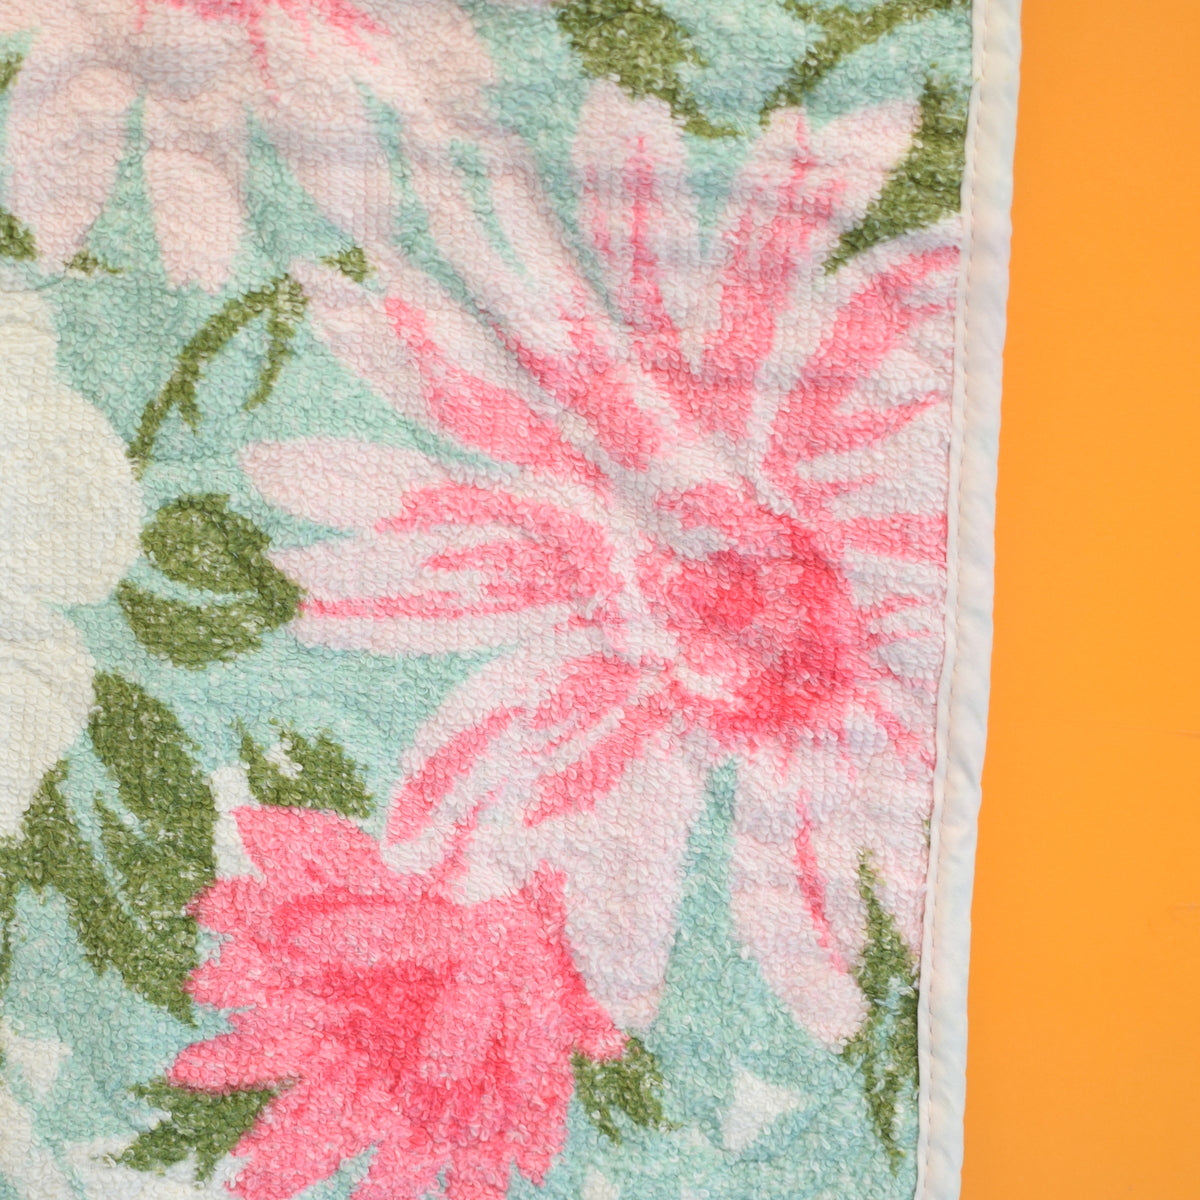 Vintage 1950s Cotton Towel Set - Pink Flowers